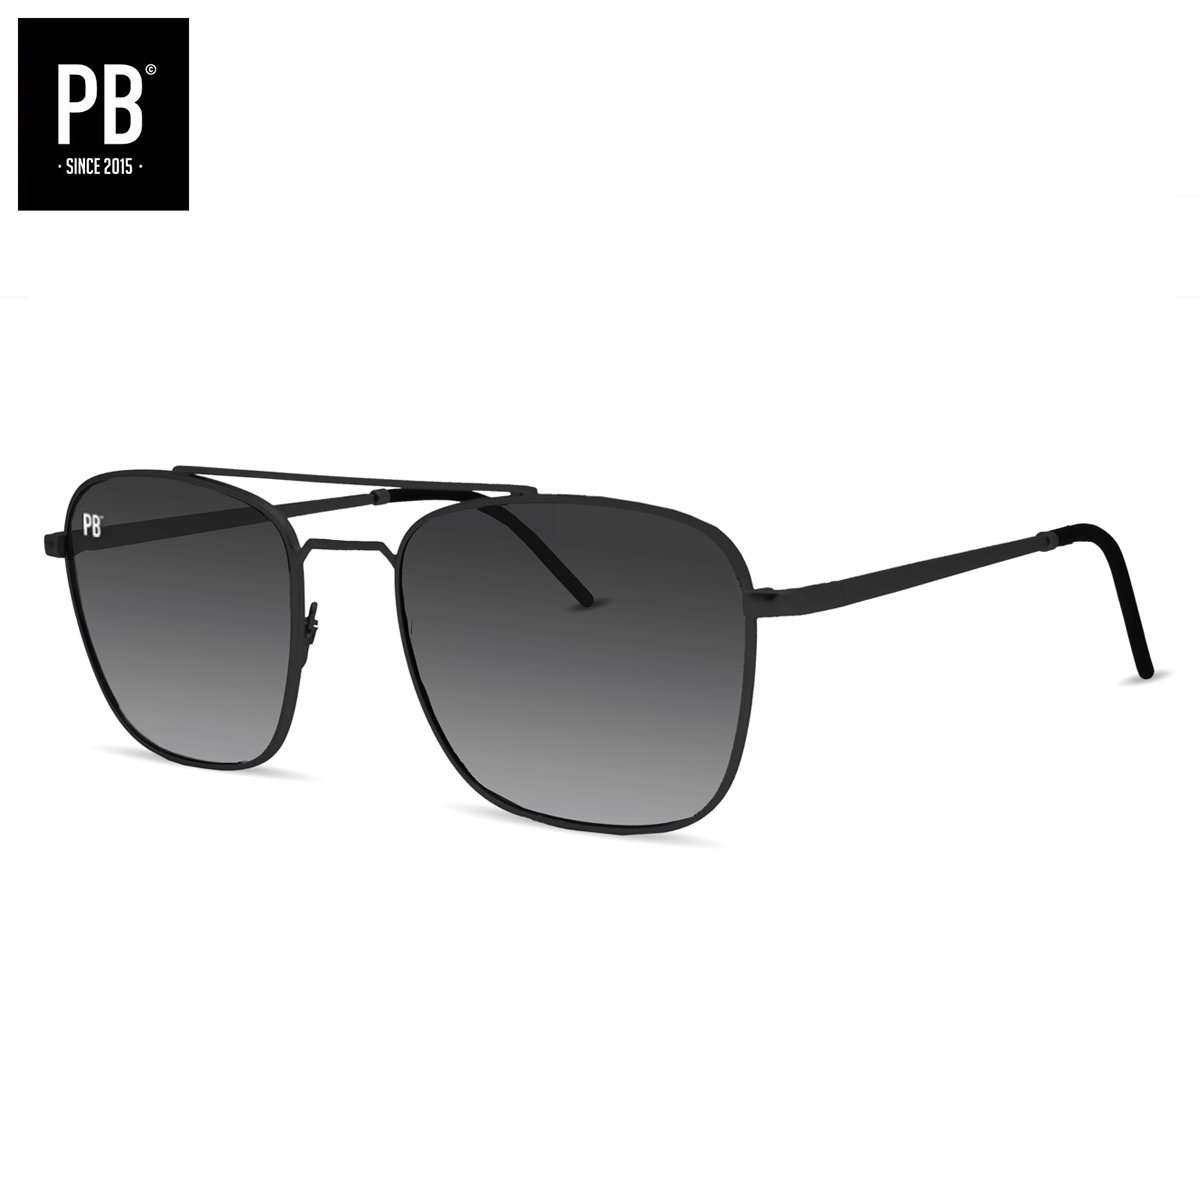 PB Sunglasses - Legend Black. - Zonnebril heren en dames - Gepolariseerd - Mat zwart frame - Stijlvolle extra neusbrug